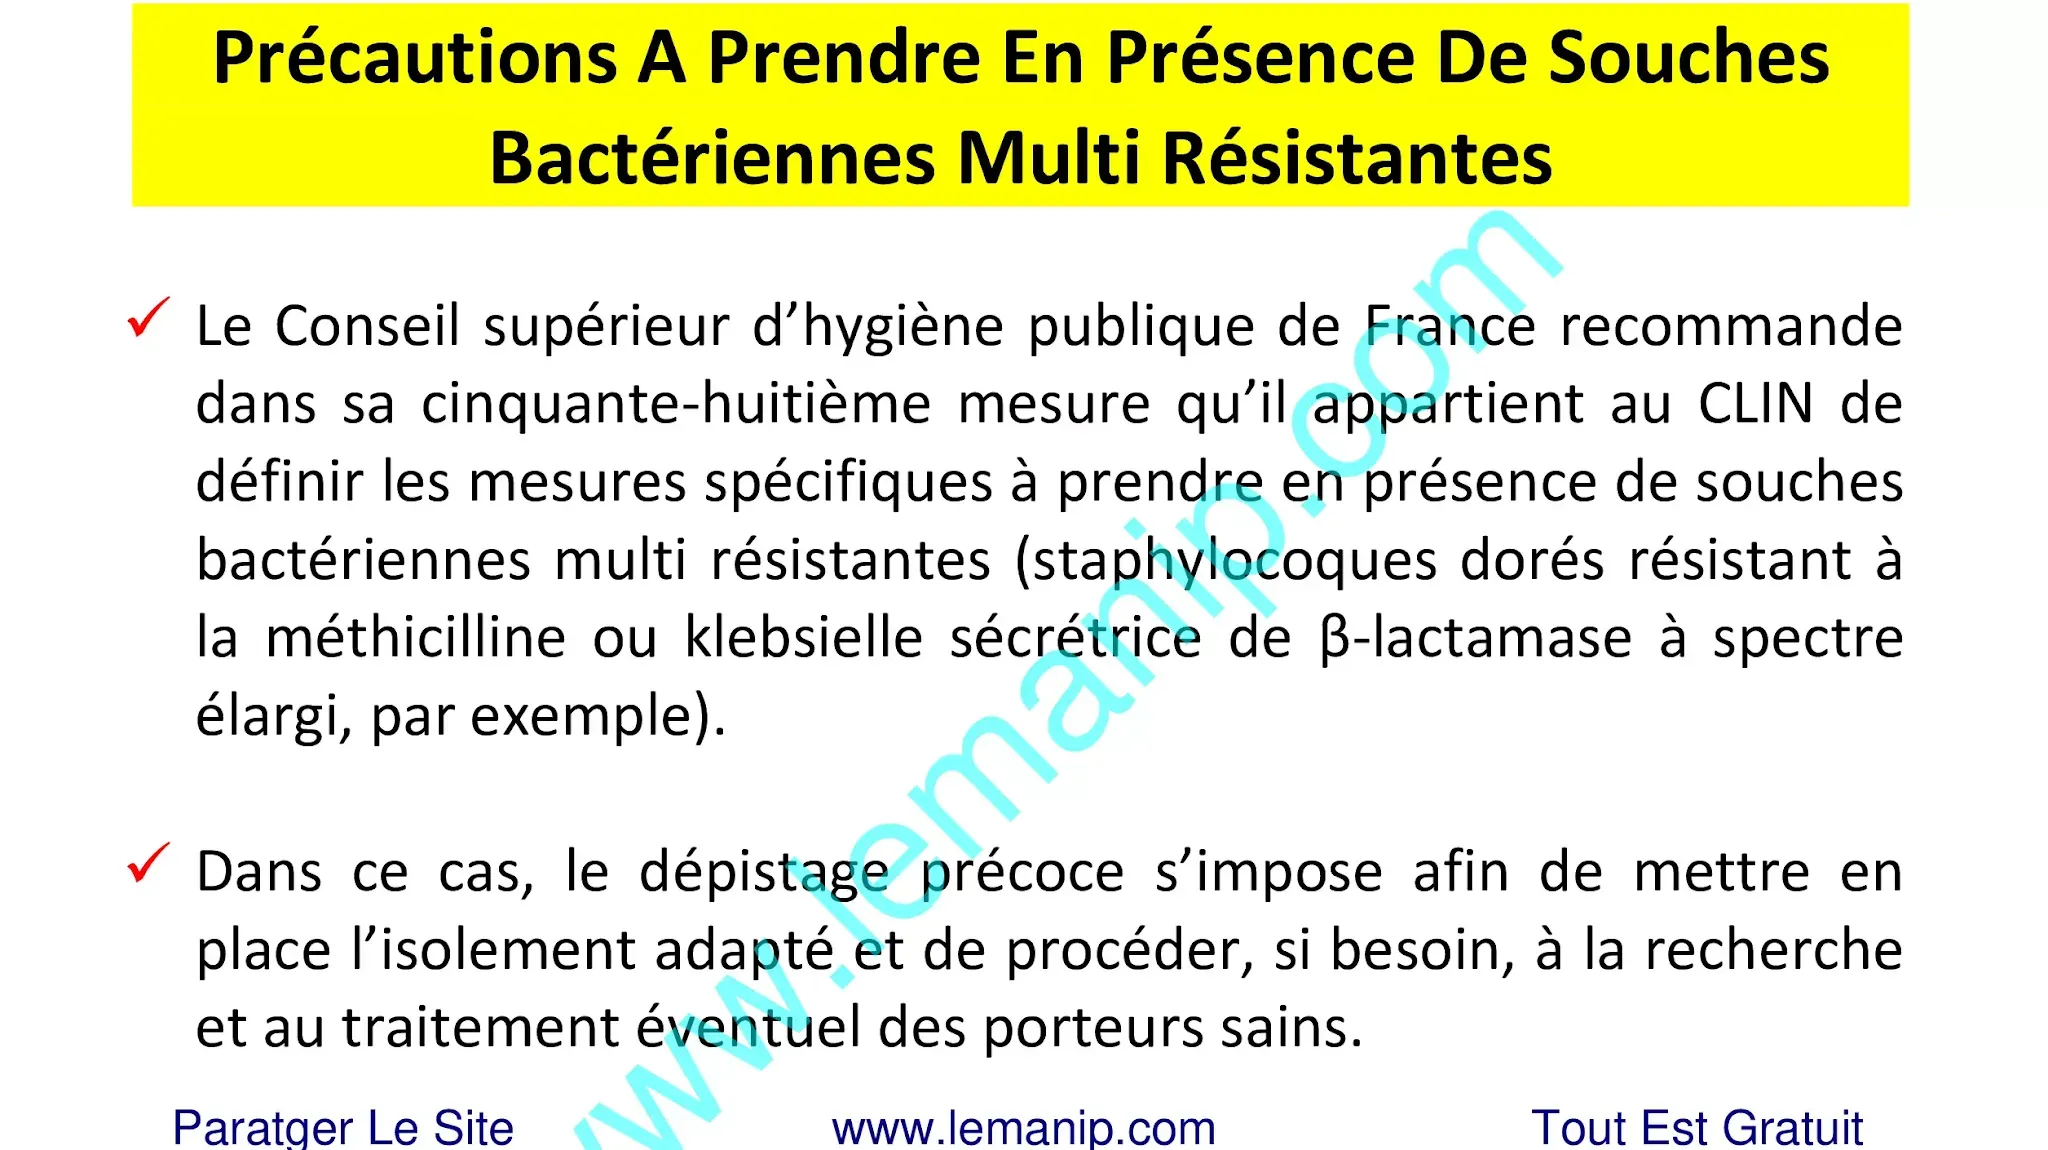 Précautions A Prendre En Présence De Souches Bactériennes Multi Résistantes